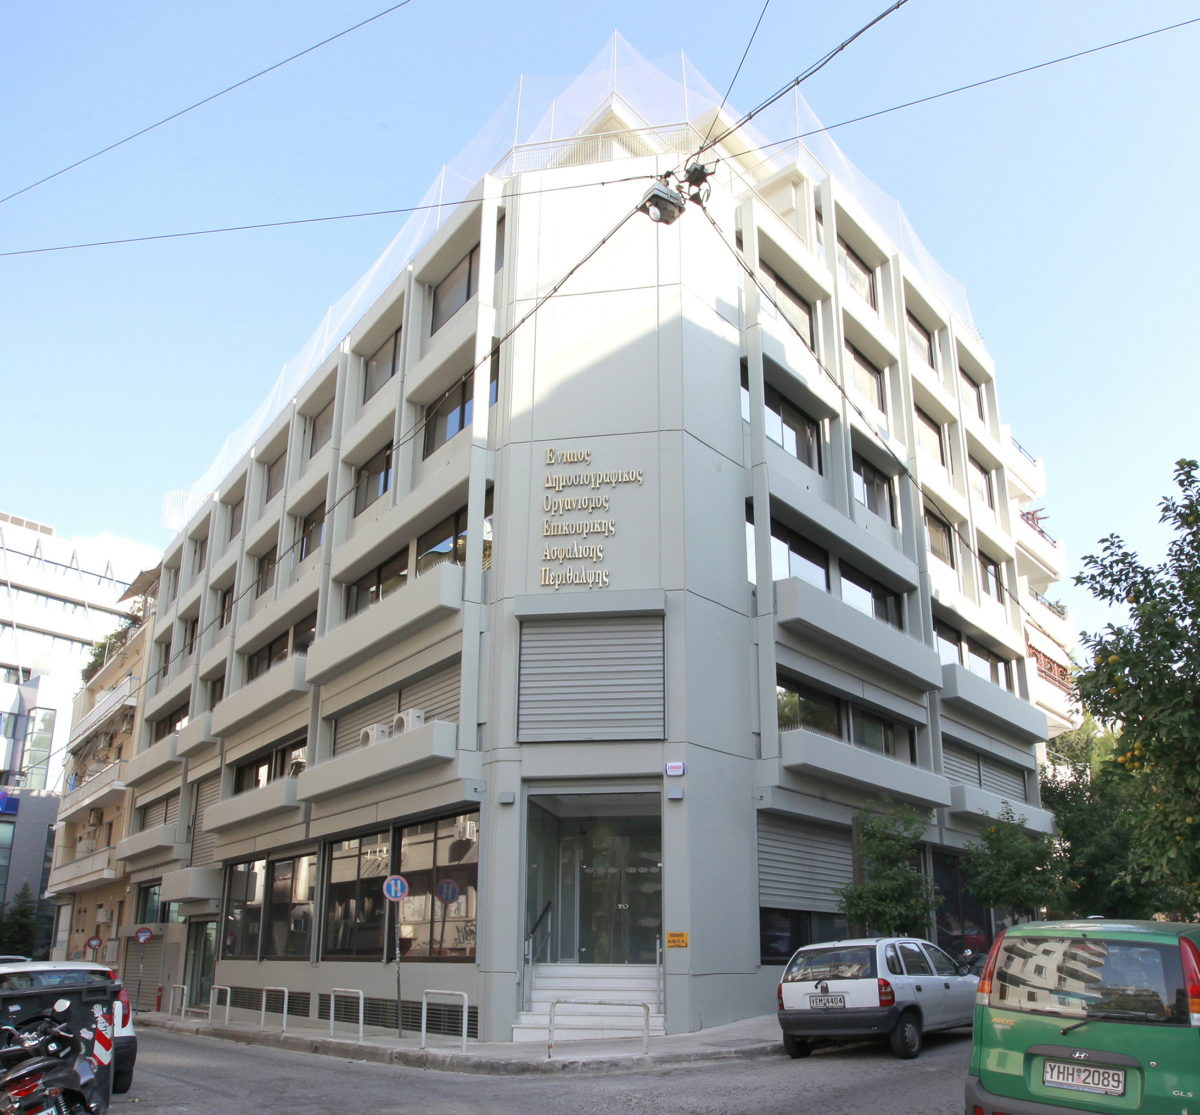 Πρόσκληση Εκδήλωσης Ενδιαφέροντος για υποβολή Αρχιτεκτονικής Μελέτης σχετικά με την παροχή υπηρεσιών Επισκευής και Αναδιαρρύθμισης κτιρίων ΕΔΟΕΑΠ στην Αθήνα